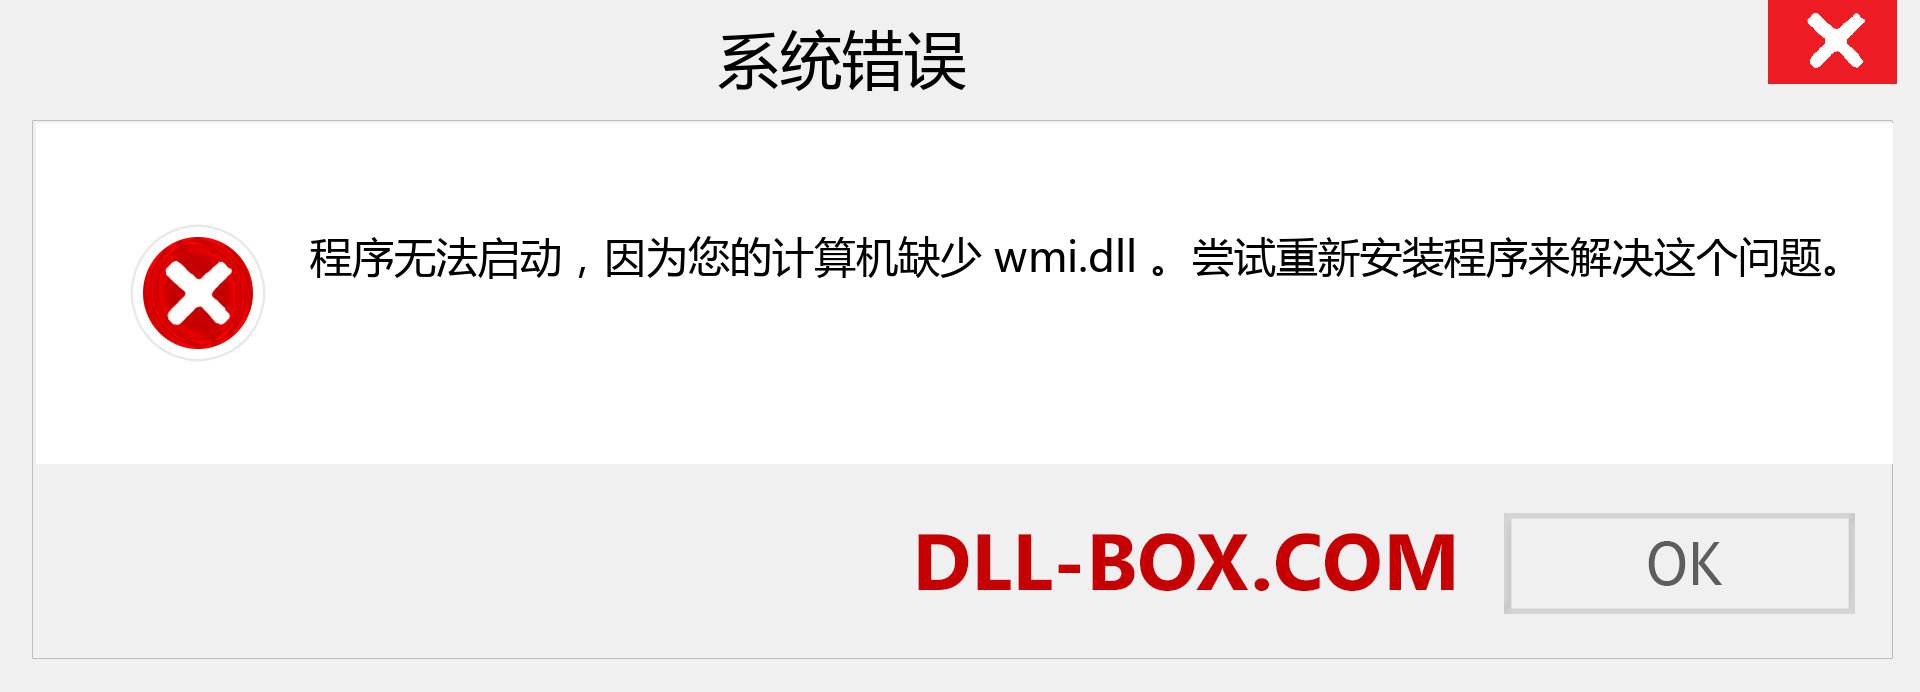 wmi.dll 文件丢失？。 适用于 Windows 7、8、10 的下载 - 修复 Windows、照片、图像上的 wmi dll 丢失错误